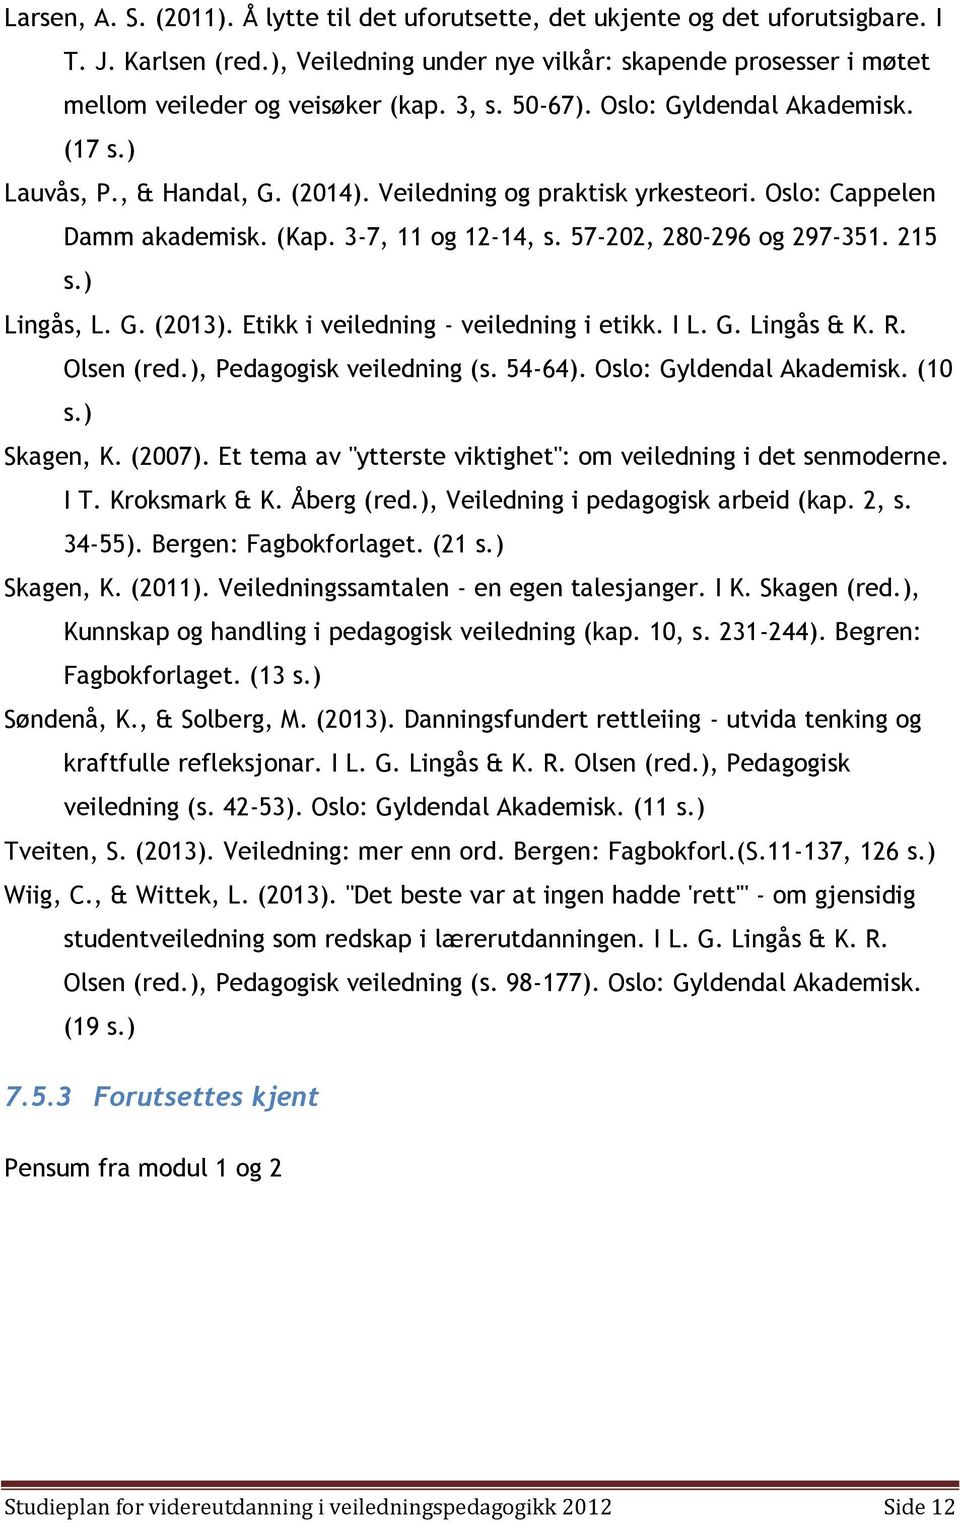 57-202, 280-296 og 297-351. 215 s.) Lingås, L. G. (2013). Etikk i veiledning - veiledning i etikk. I L. G. Lingås & K. R. Olsen (red.), Pedagogisk veiledning (s. 54-64). Oslo: Gyldendal Akademisk.